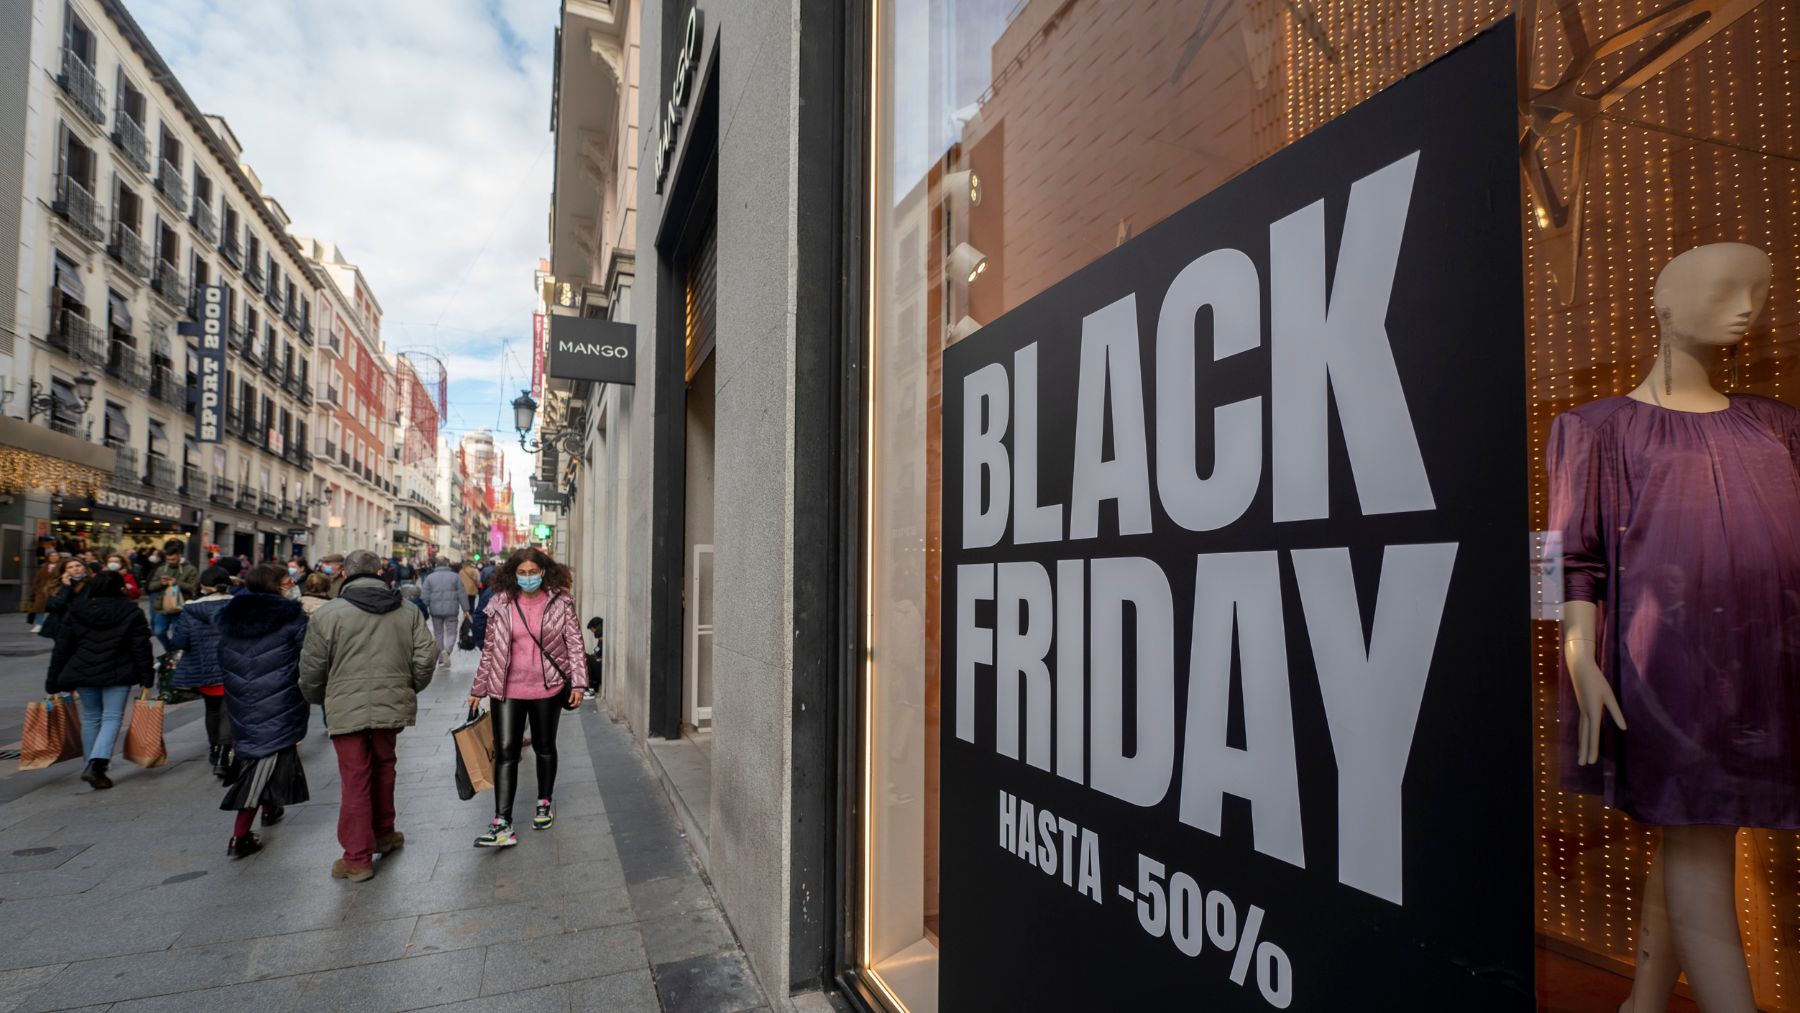 Un cartel publicitario anuncia rebajas con motivo del Black Friday